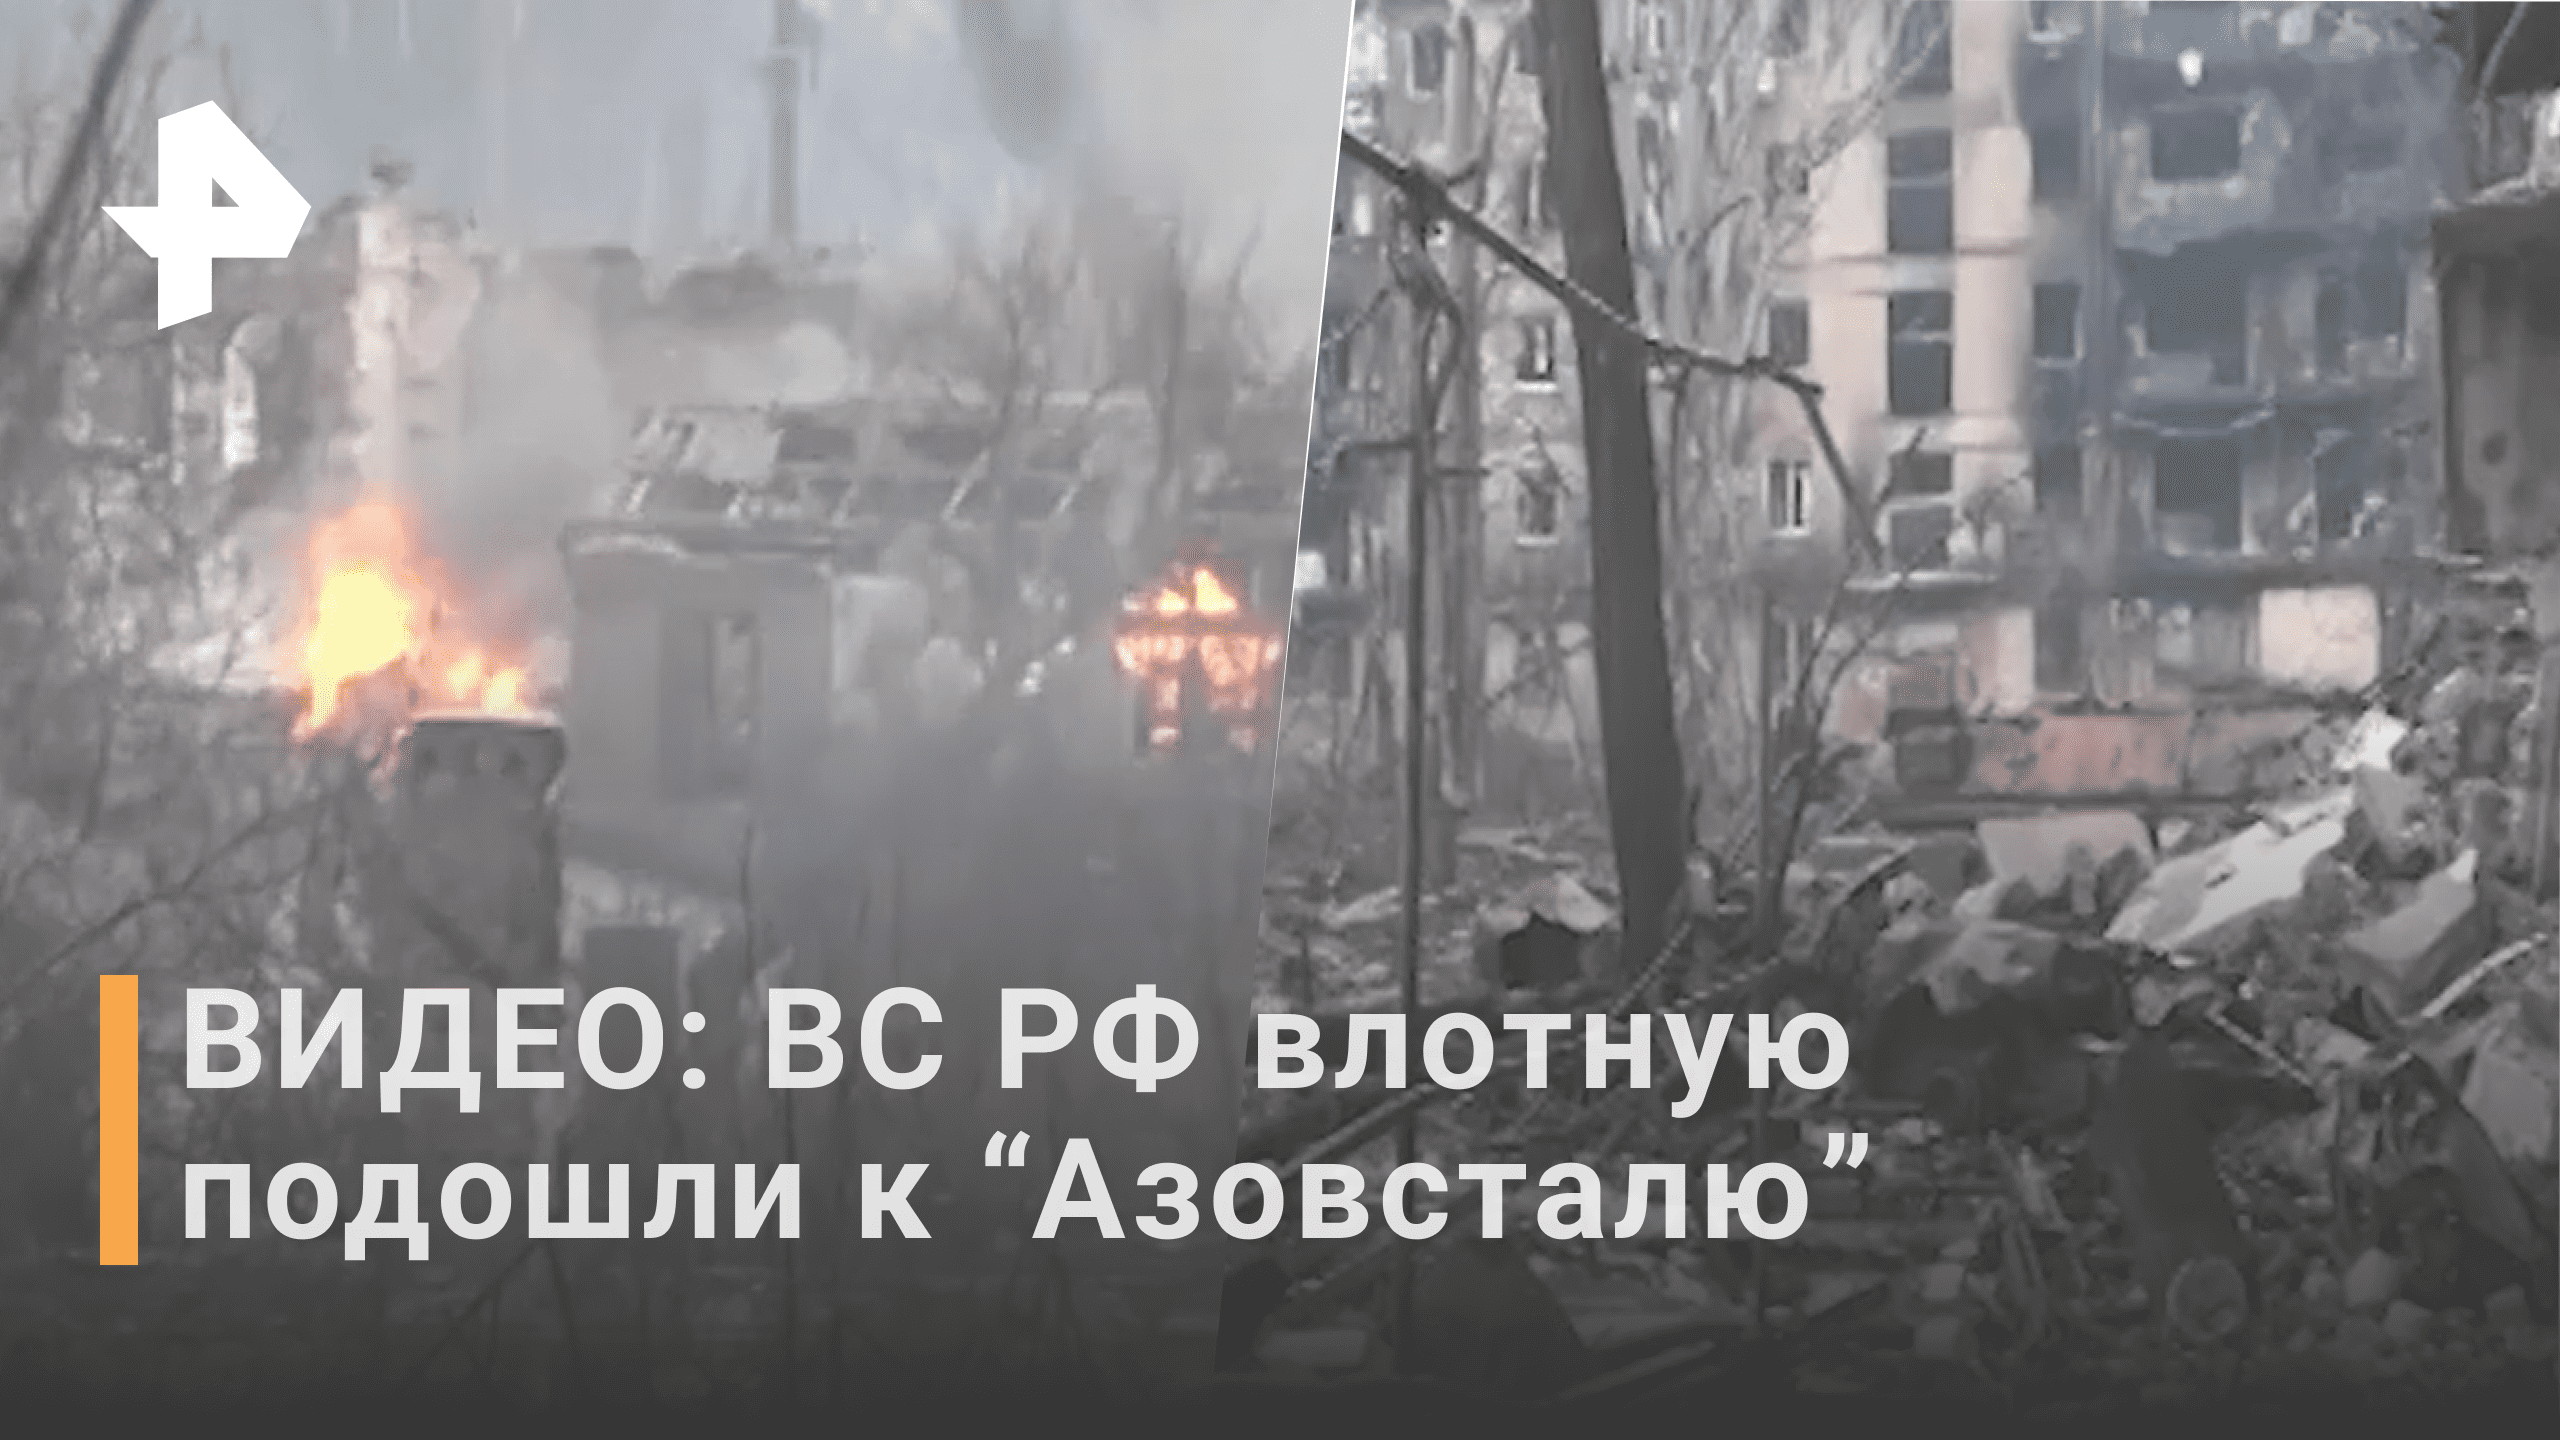 Российские войска вплотную подошли к "Азовсталю" в Мариуполе / РЕН Новости